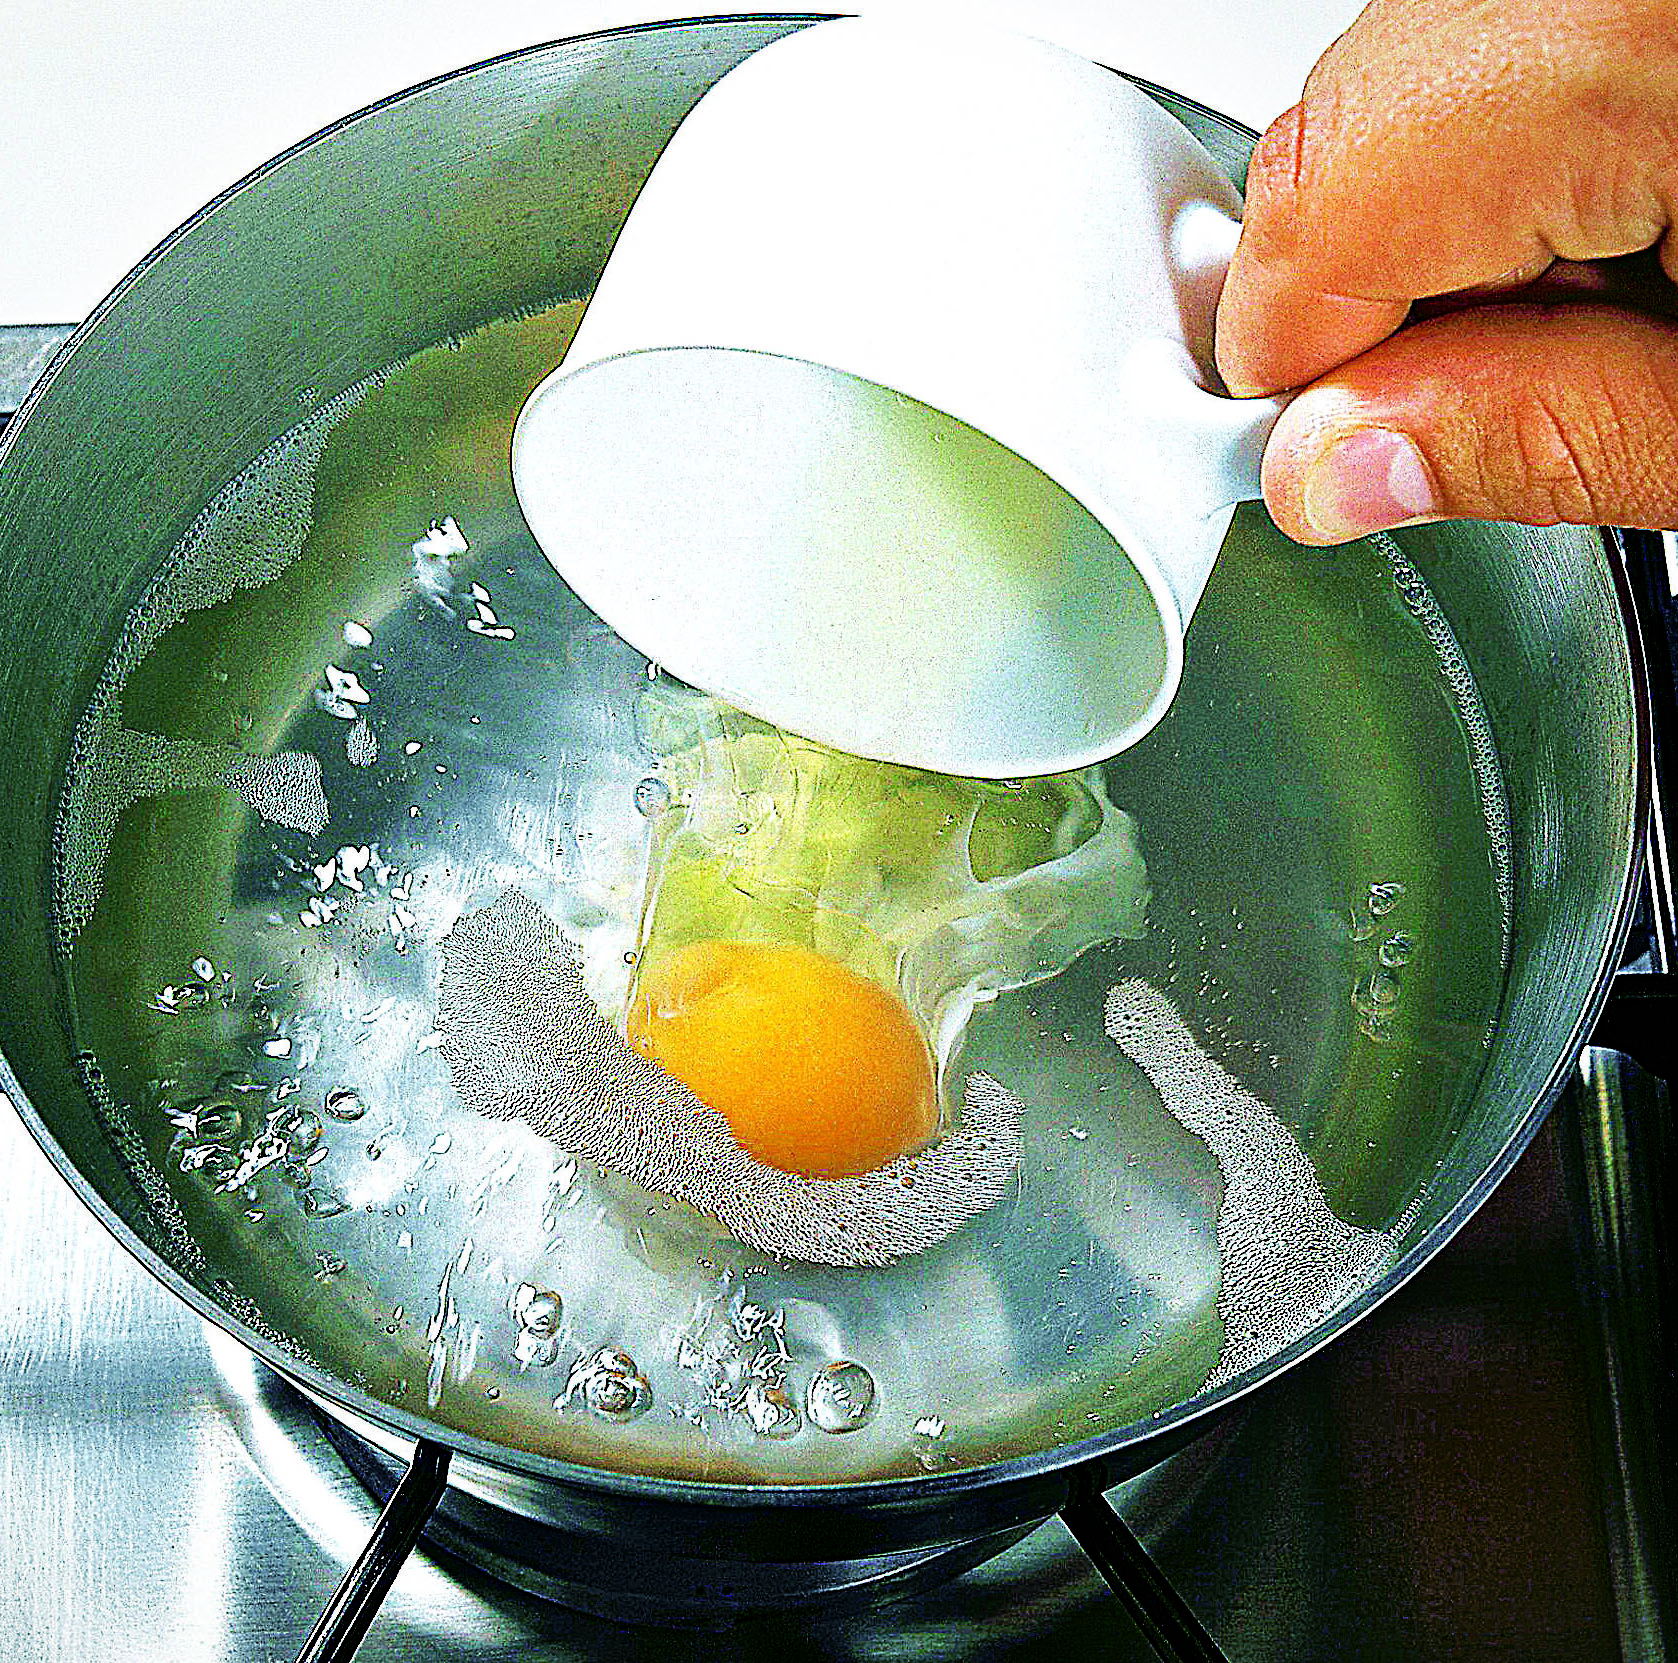 Яйцо пашот способы. Яйцо пашот в мешочке. Варка яиц пашот. Яйцо пашот в кипящую воду. Яйцо пашот в кастрюле.